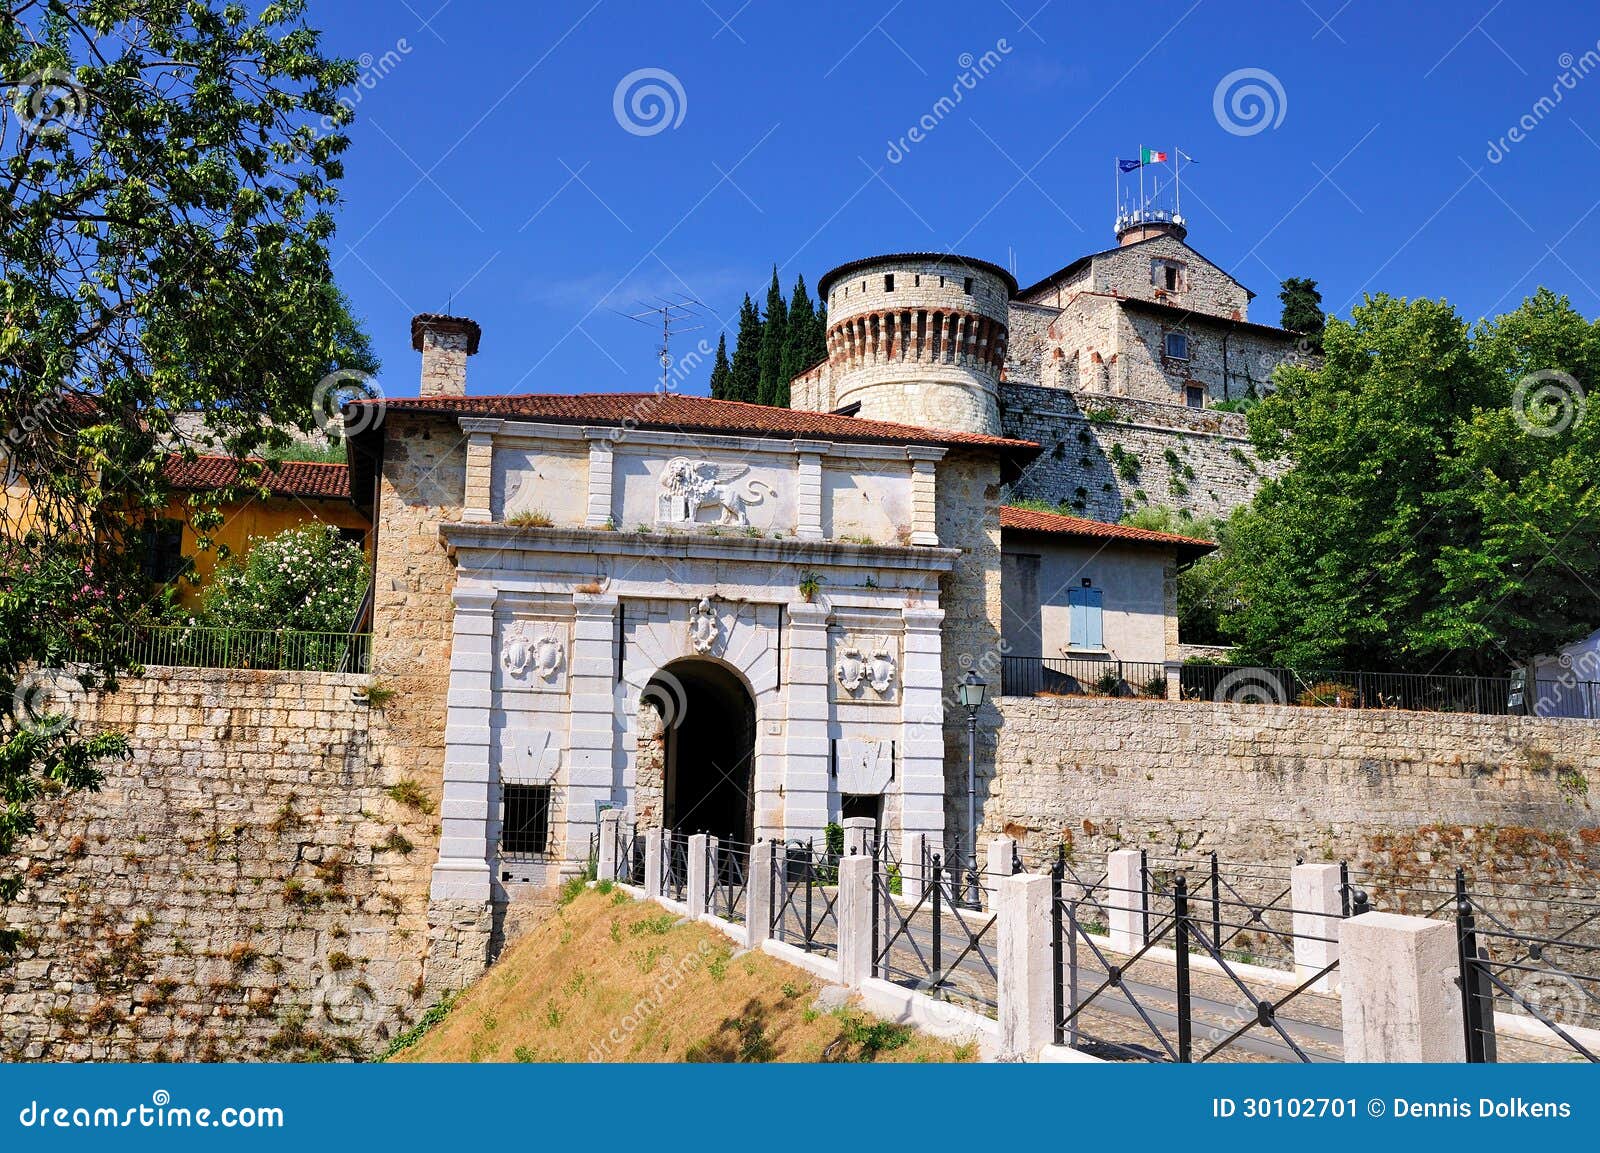 castle of brescia, italy